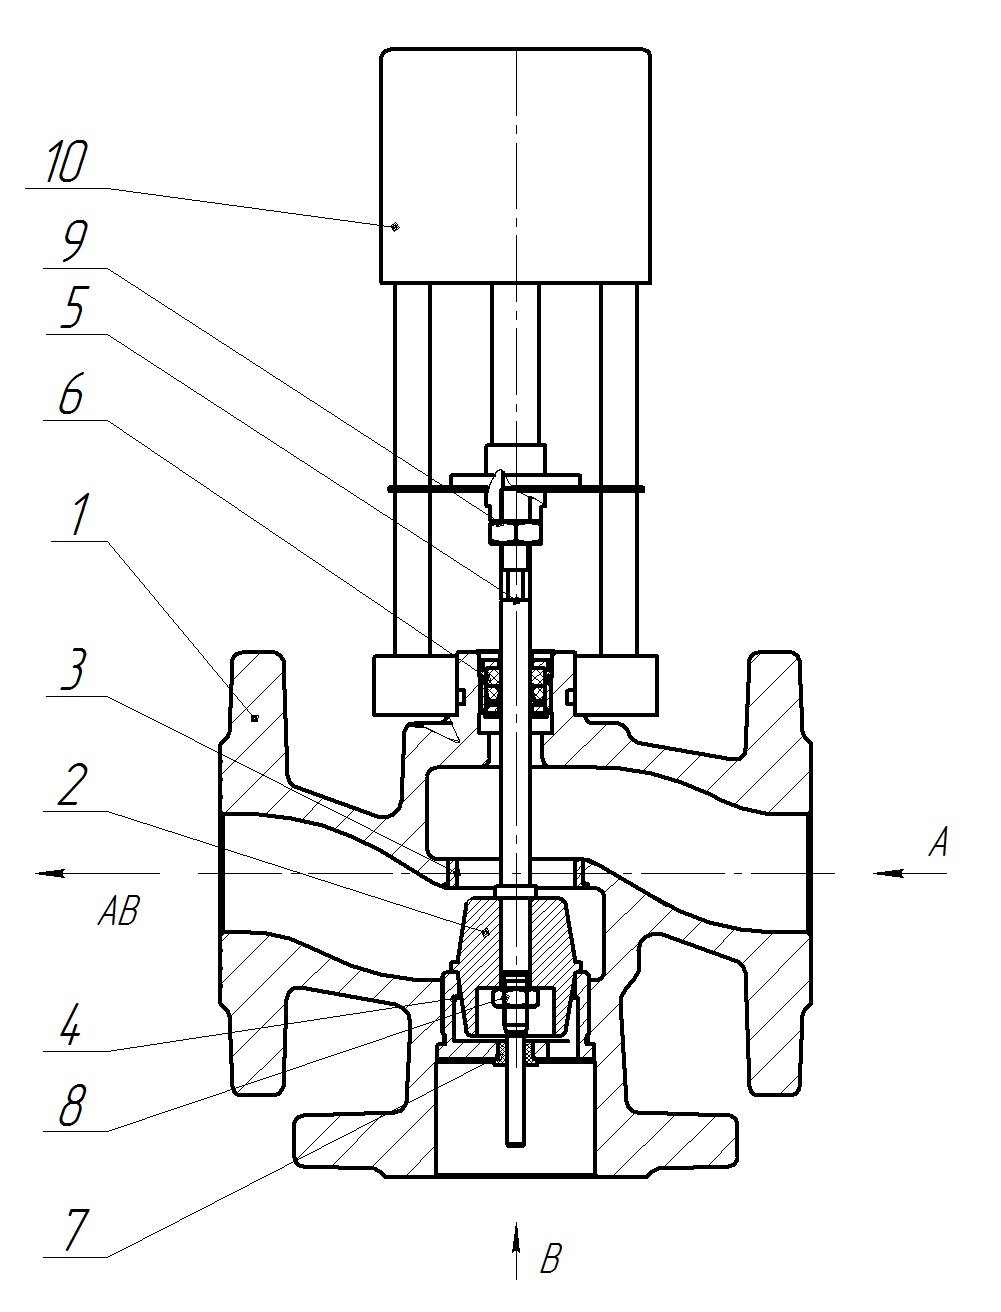 Клапан регулирующий трехходовой разделительный DN.ru 23ч901нж Ду15 Ру16 Kvs1 серый чугун СЧ20, фланцевый, Tmax до 150°С с электроприводом Катрабел TW-500-XD220